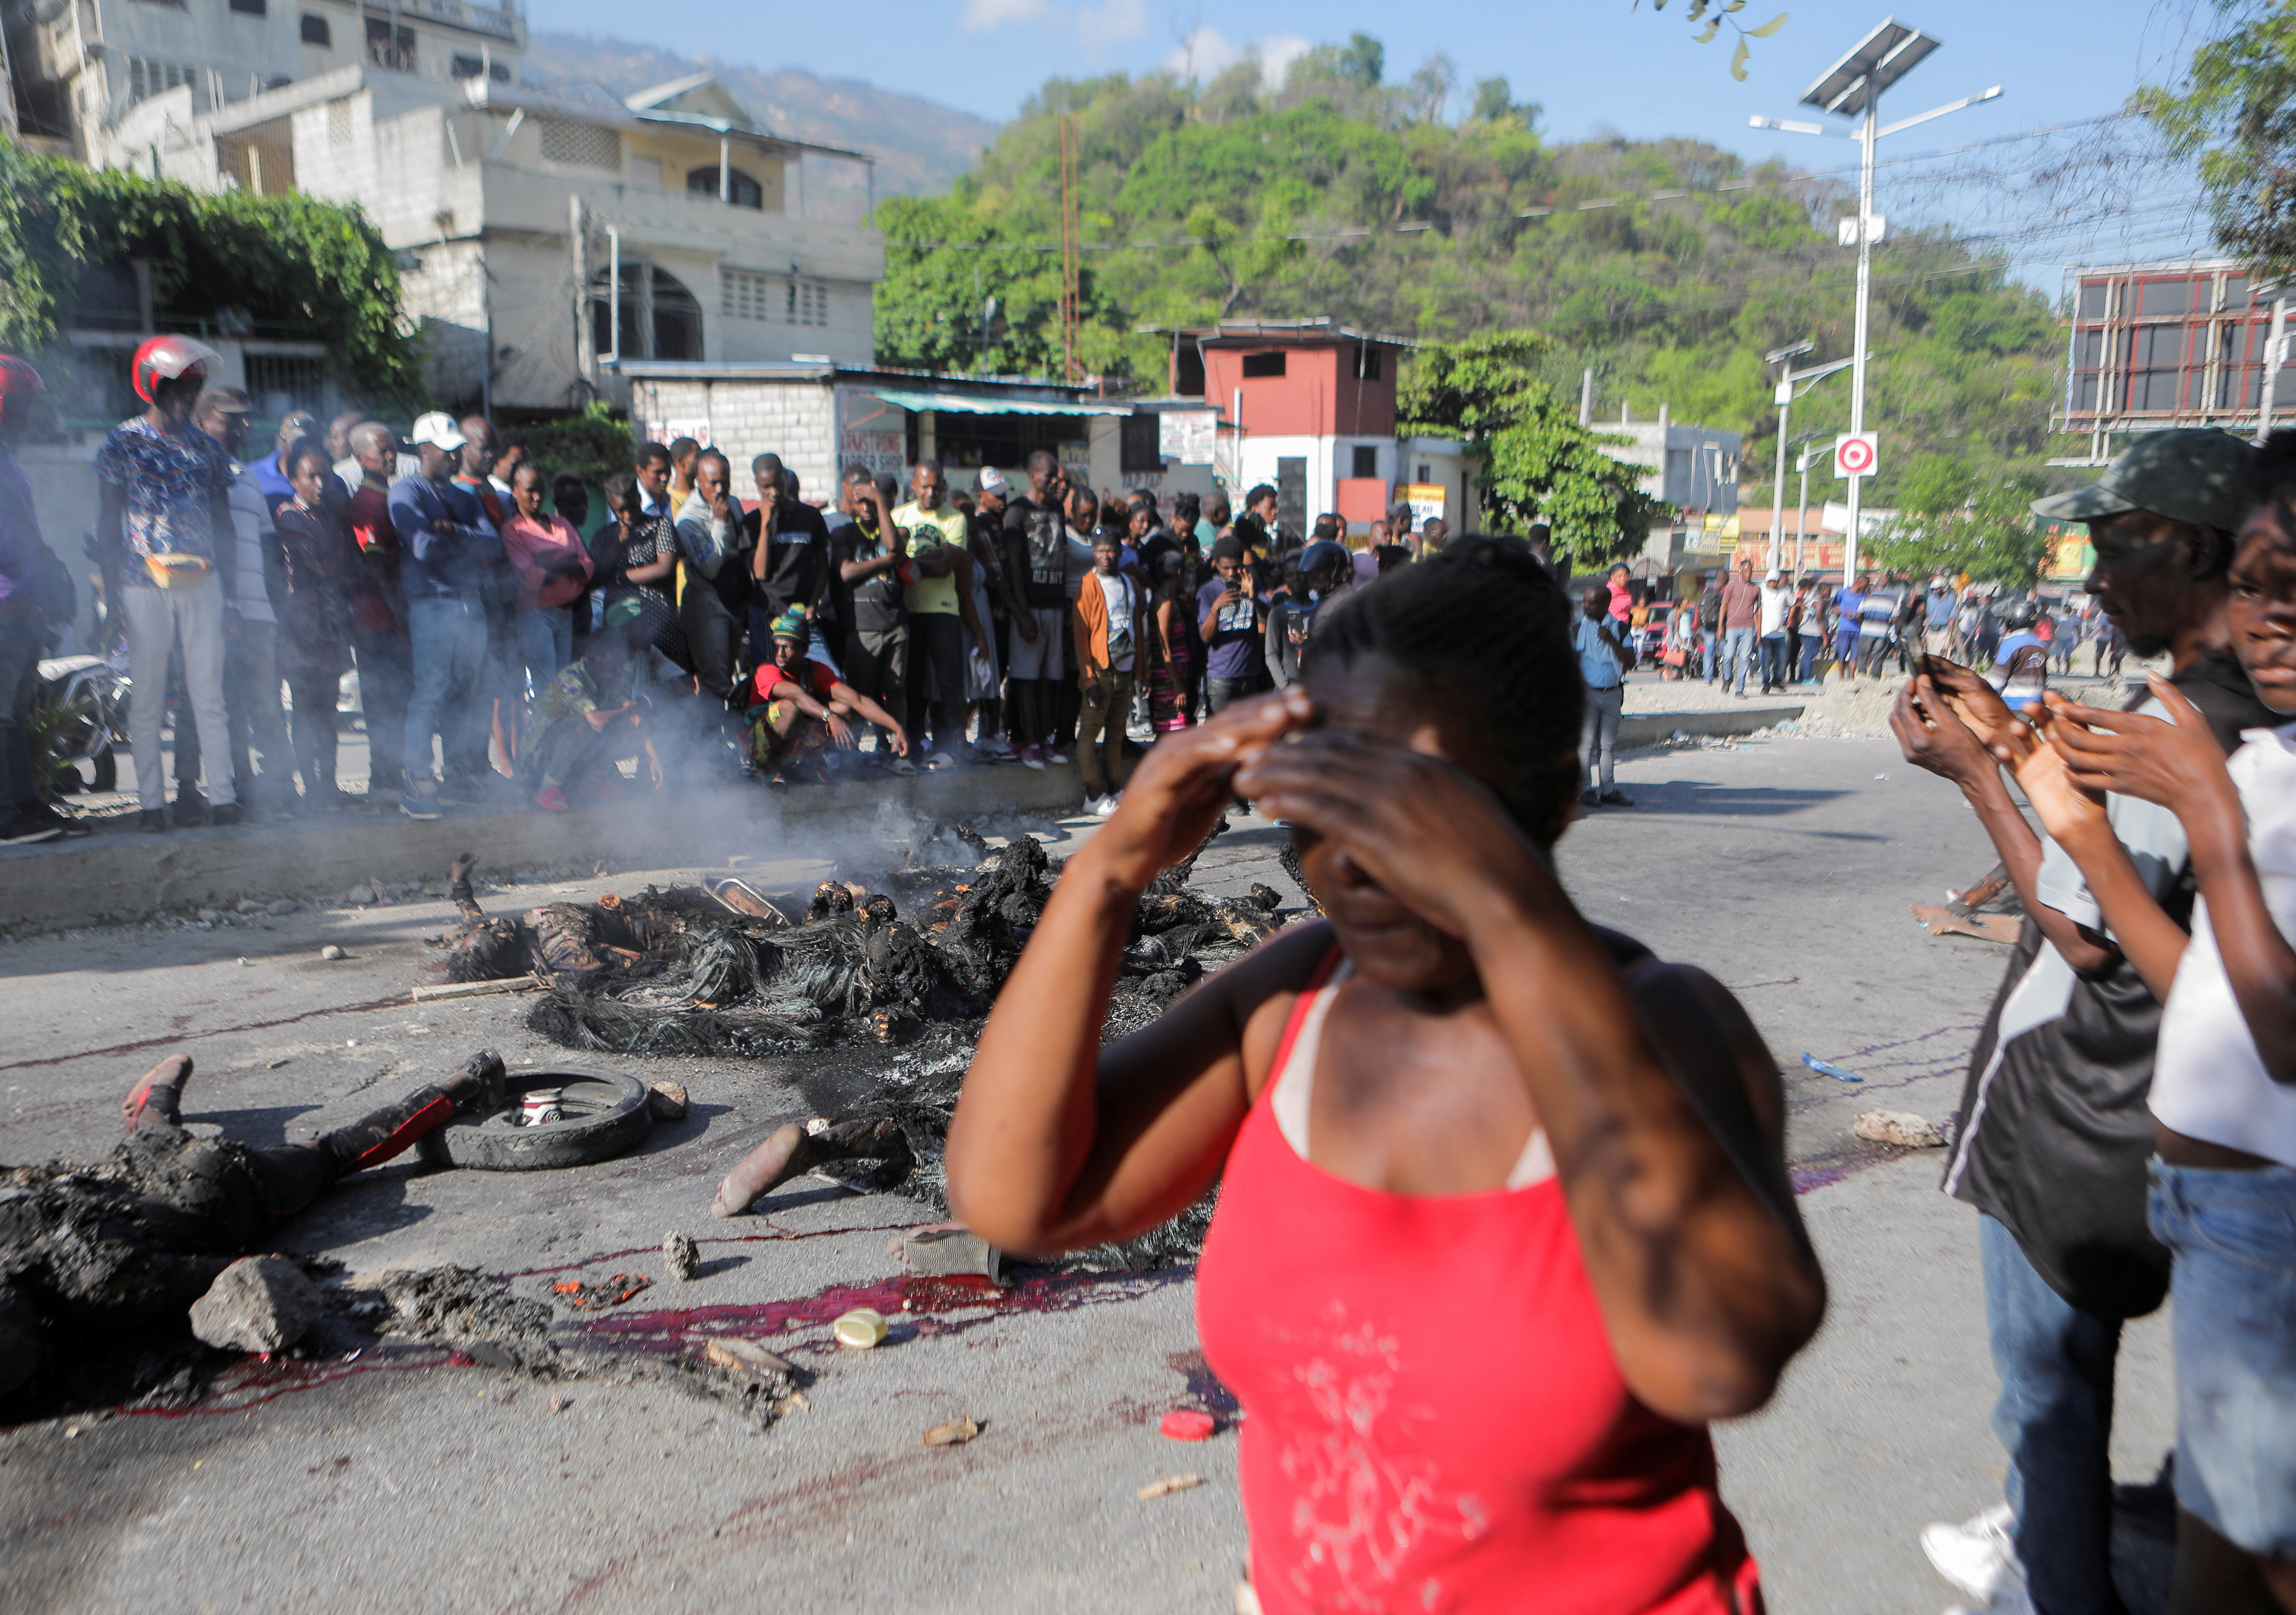 La multitud se llevó a los presuntos pandilleros, los golpeó y apedreó antes de colocarles neumáticos, rociarles gasolina y prenderles fuego (REUTERS/Ralph Tedy Erol)